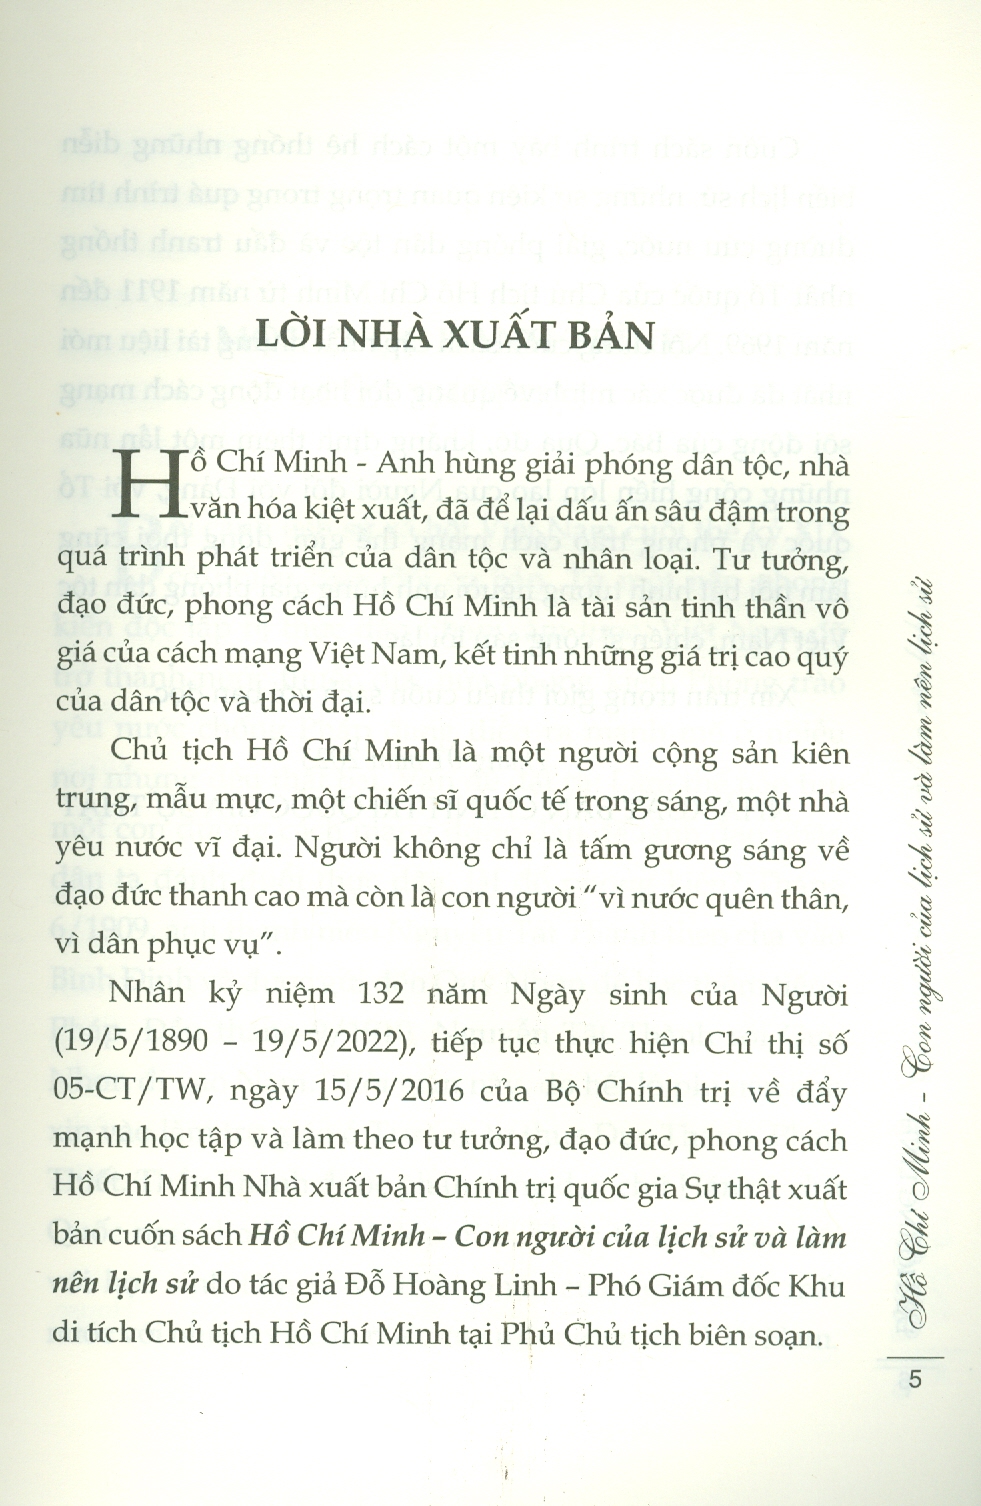 Hồ Chí Minh - Con Người Của Lịch Sử Và Làm Nên Lịch Sử